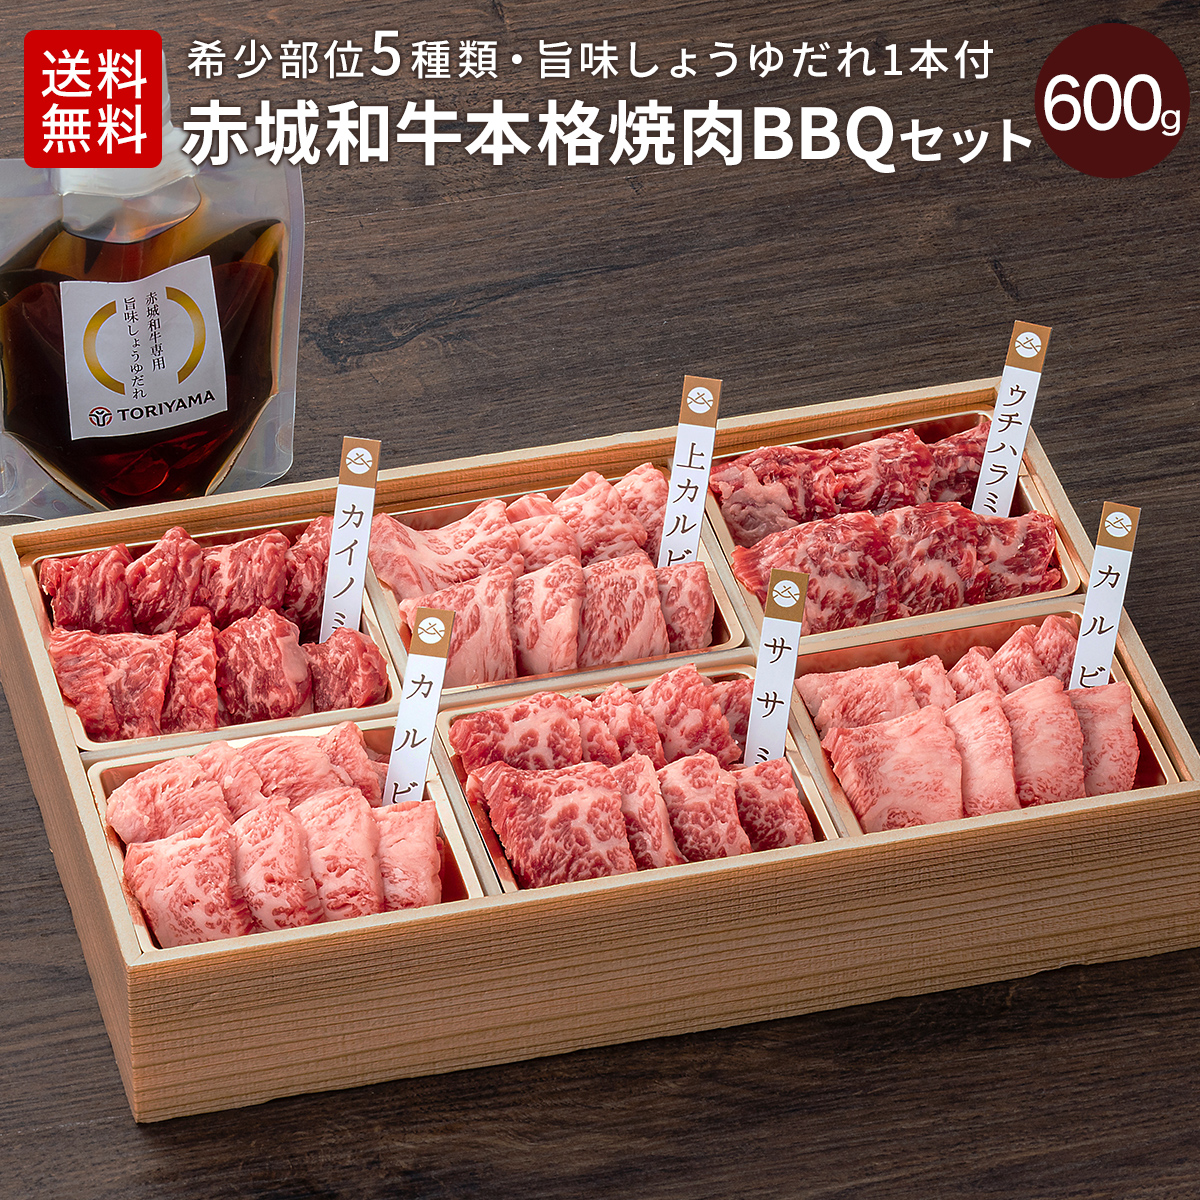 赤城和牛本格焼肉・BBQセット 600g(５種類) 醤油たれ付き